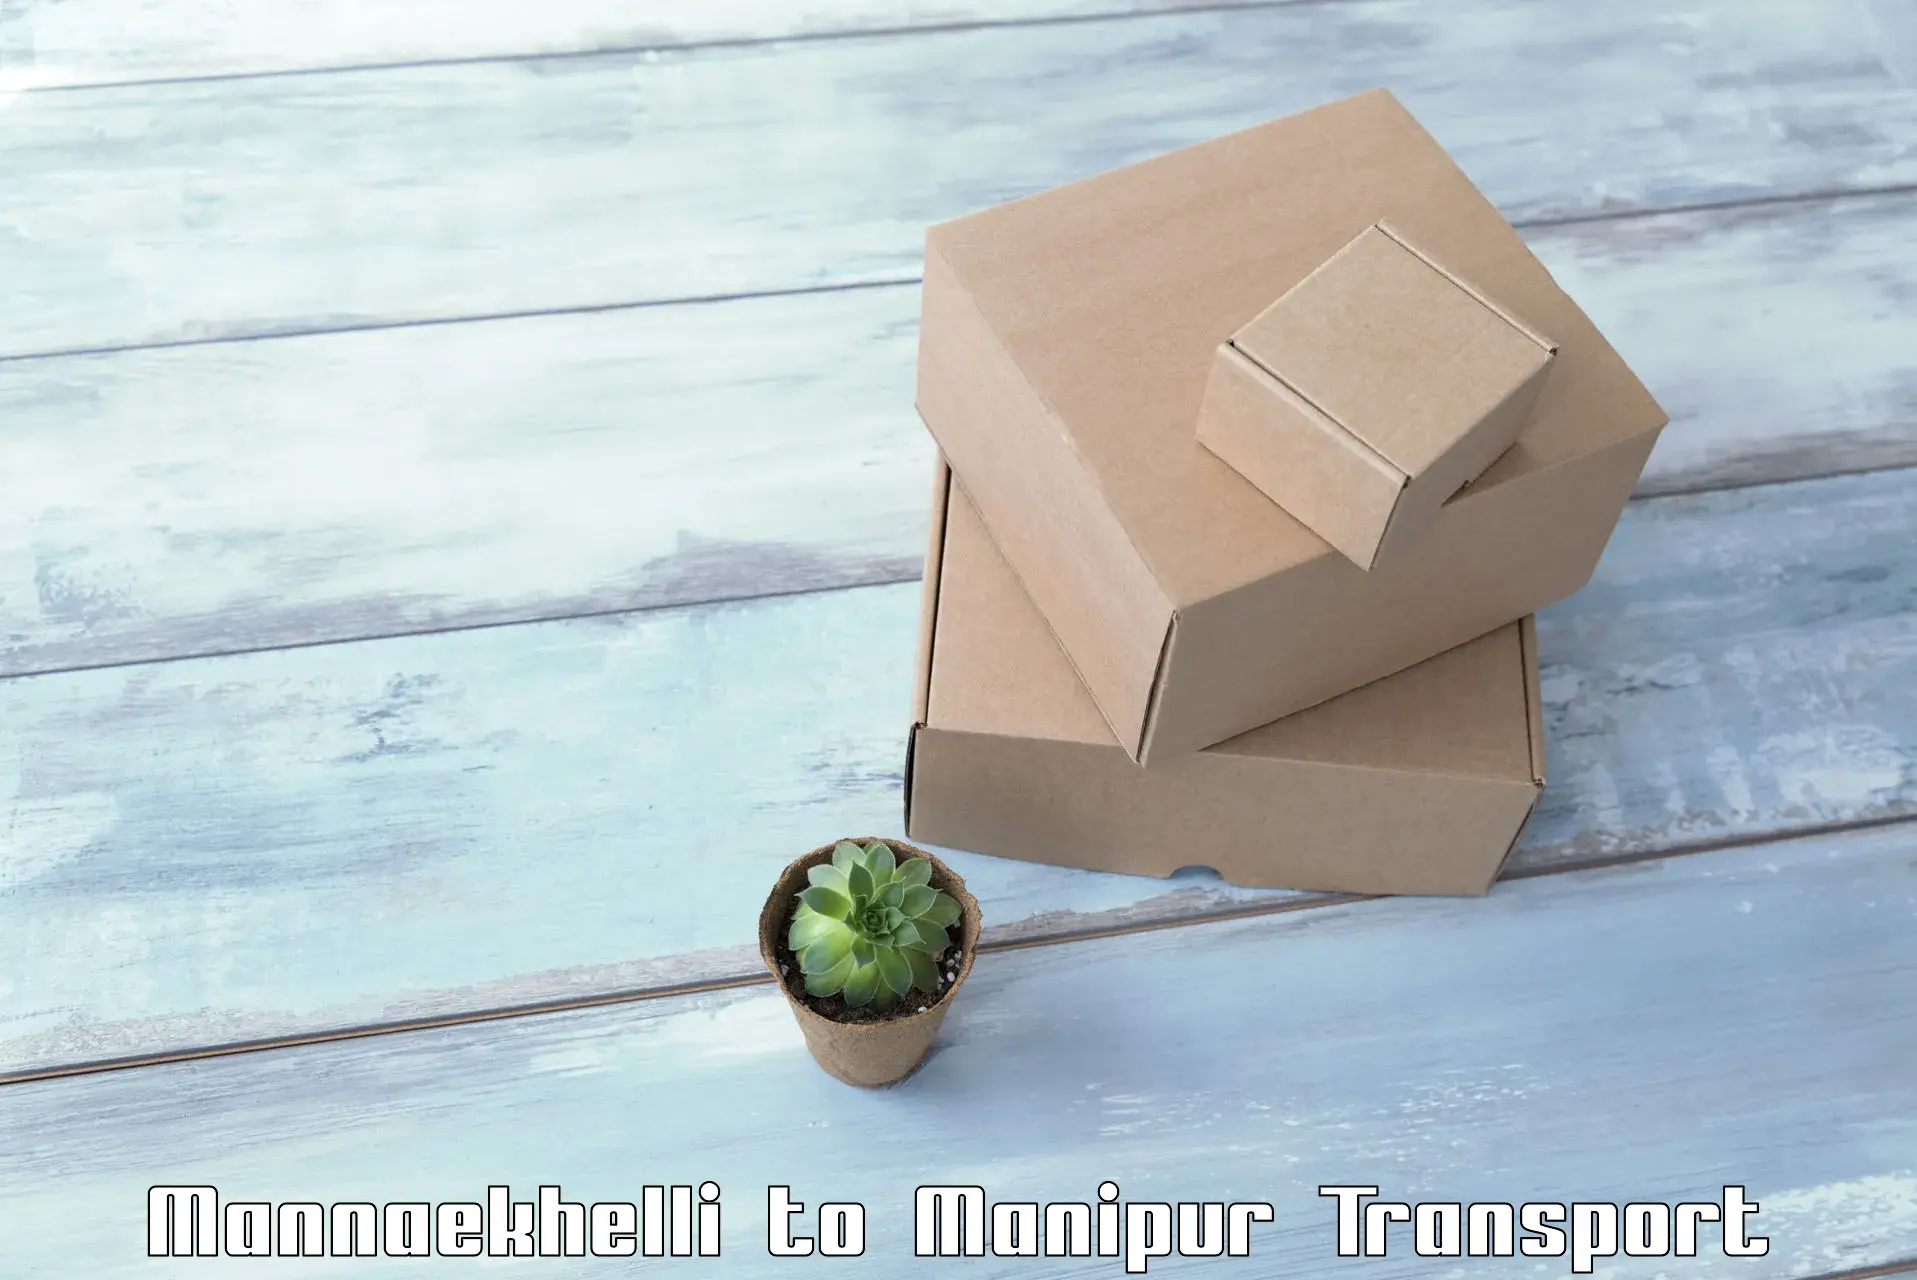 Intercity goods transport Mannaekhelli to Kangpokpi